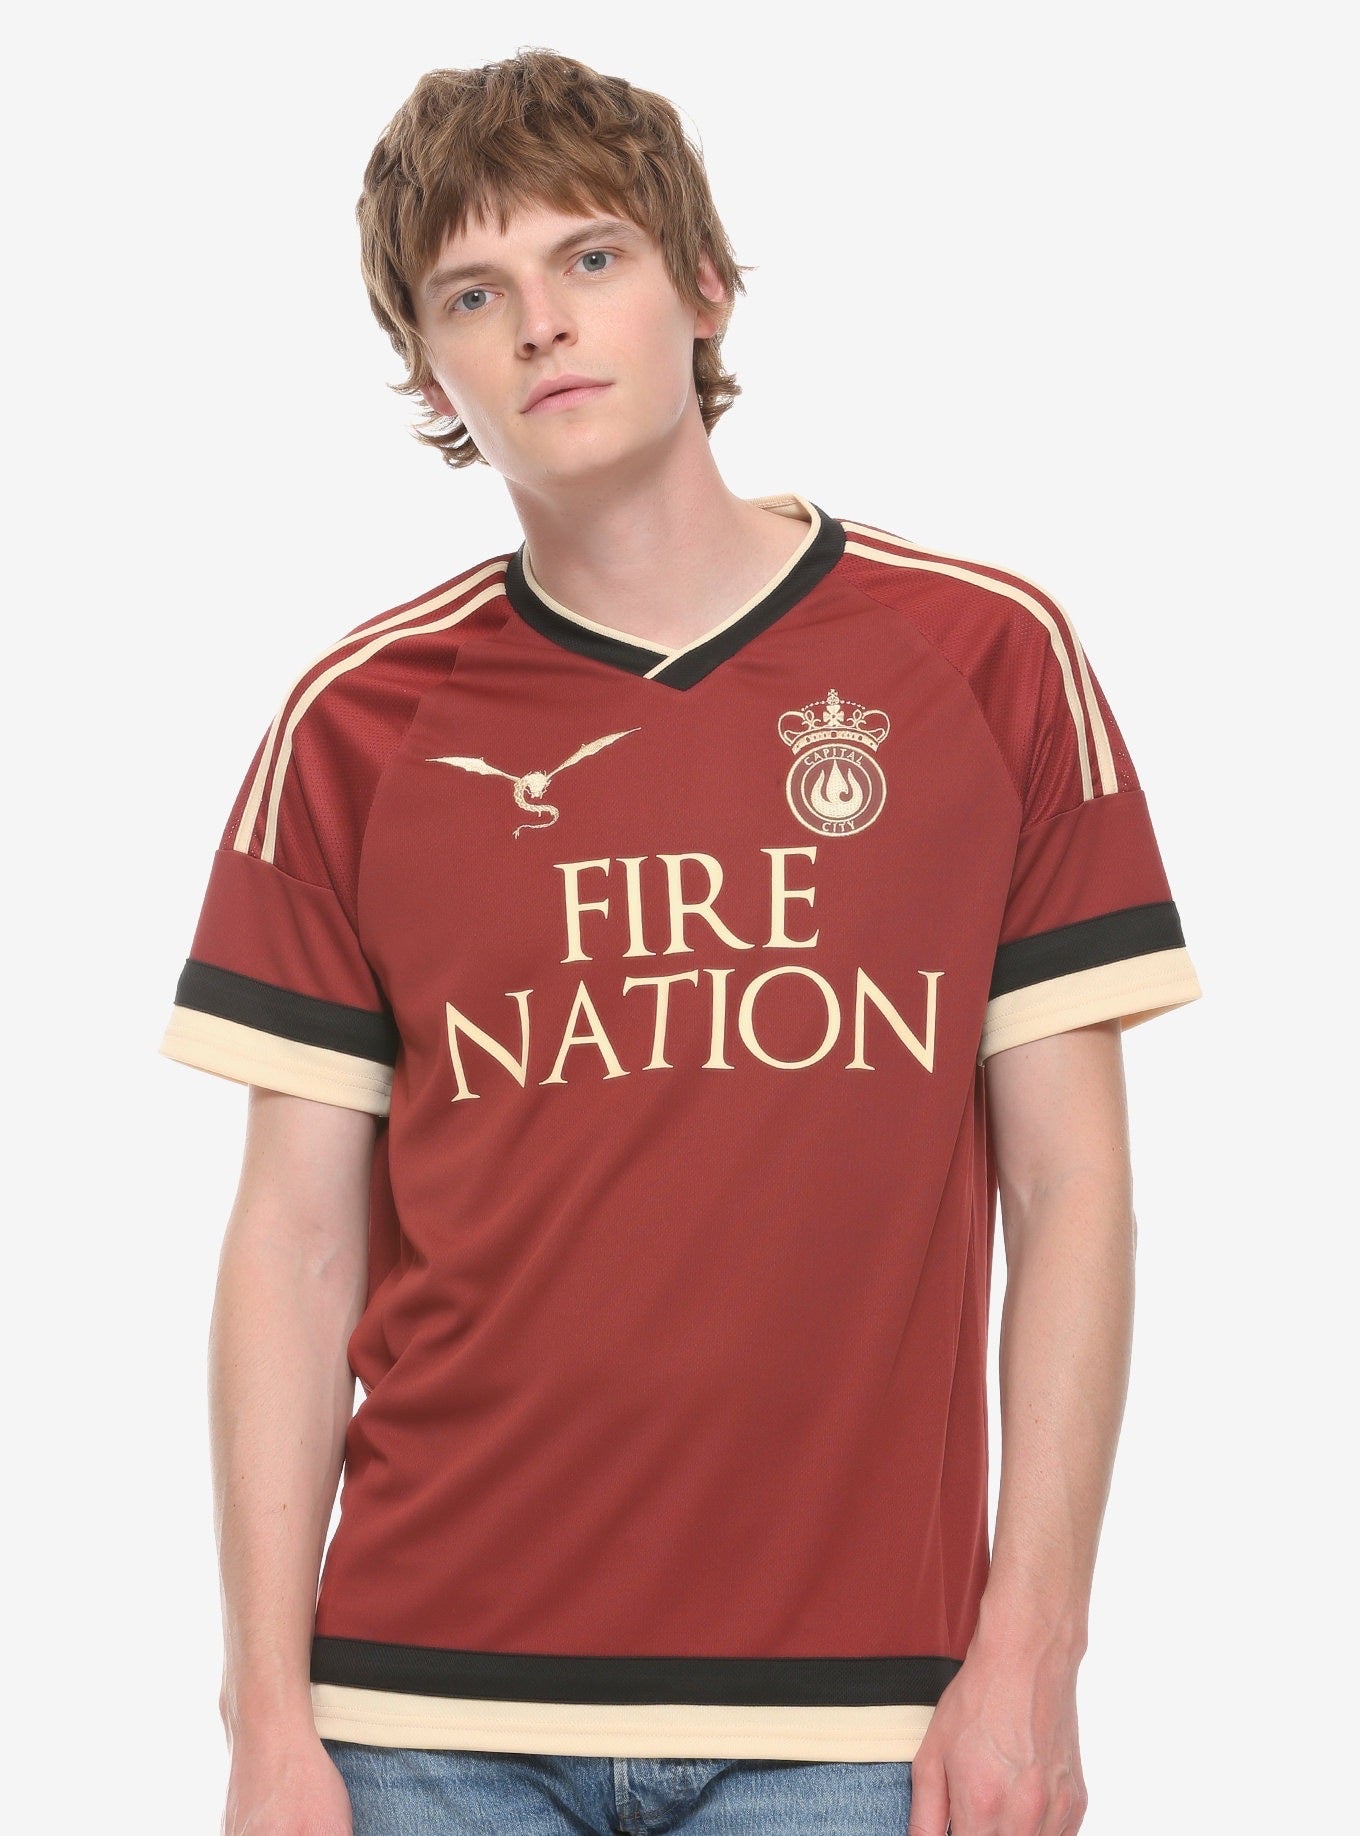 Avatar Jersey Camisa Nación De Fuego